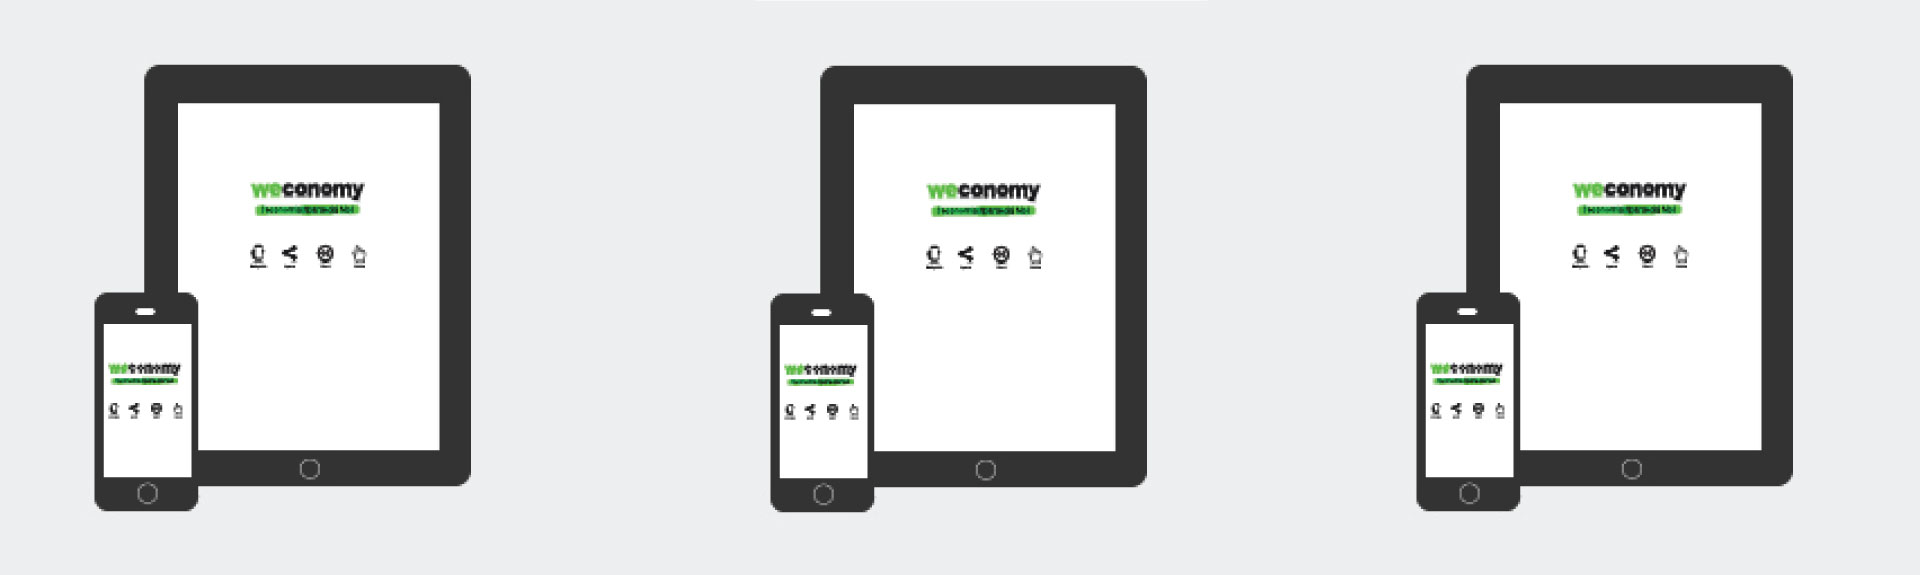 Scarica gratis le app di Weconomy!